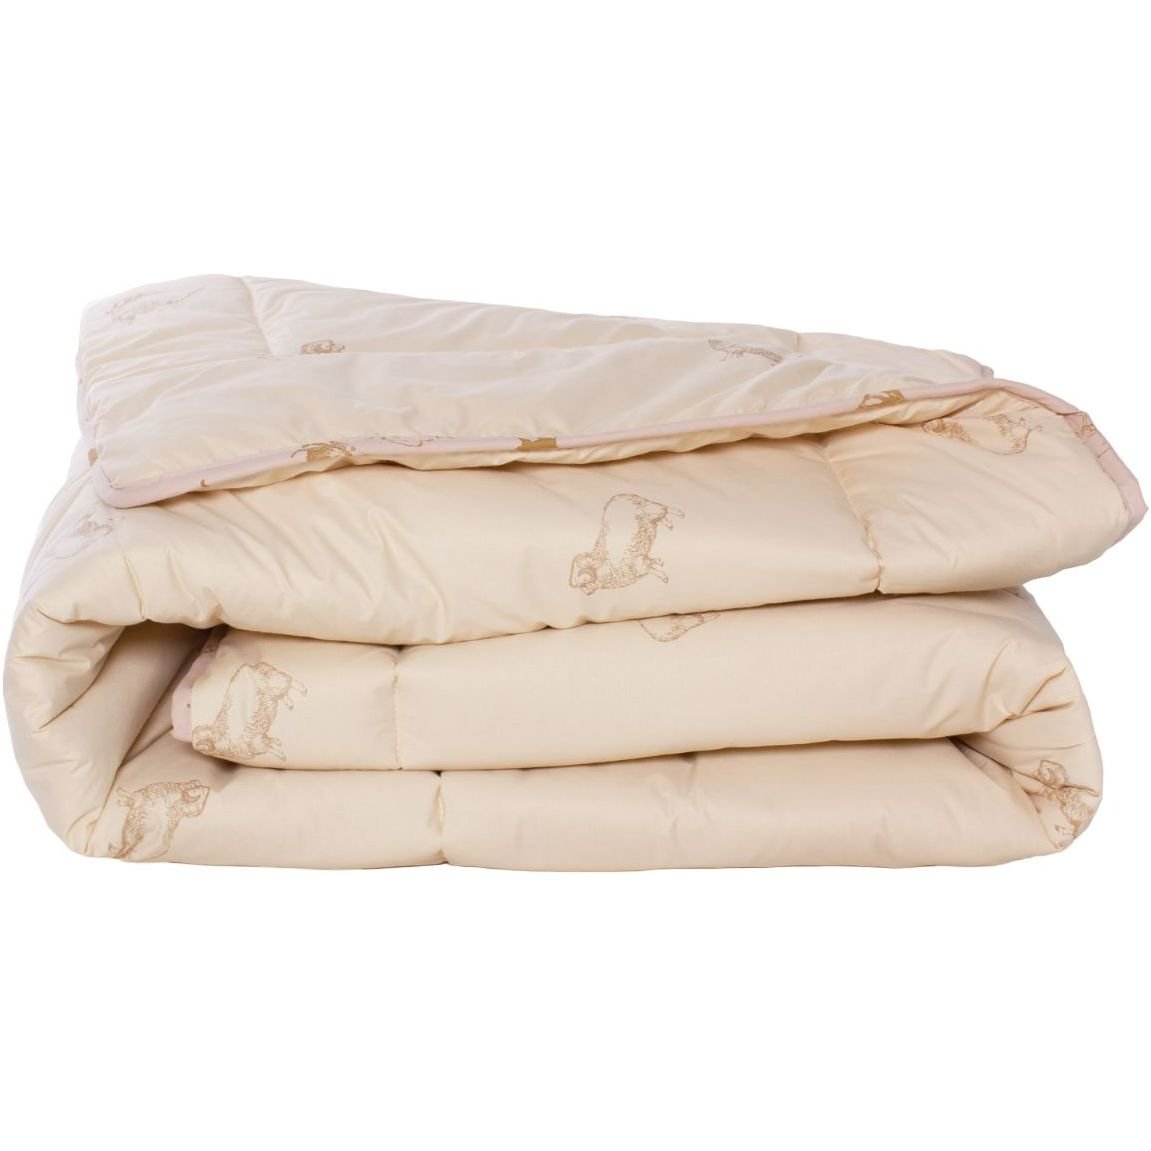 Одеяло шерстяное MirSon Gold Camel №023, демисезонное, 110x140 см, кремовое - фото 1